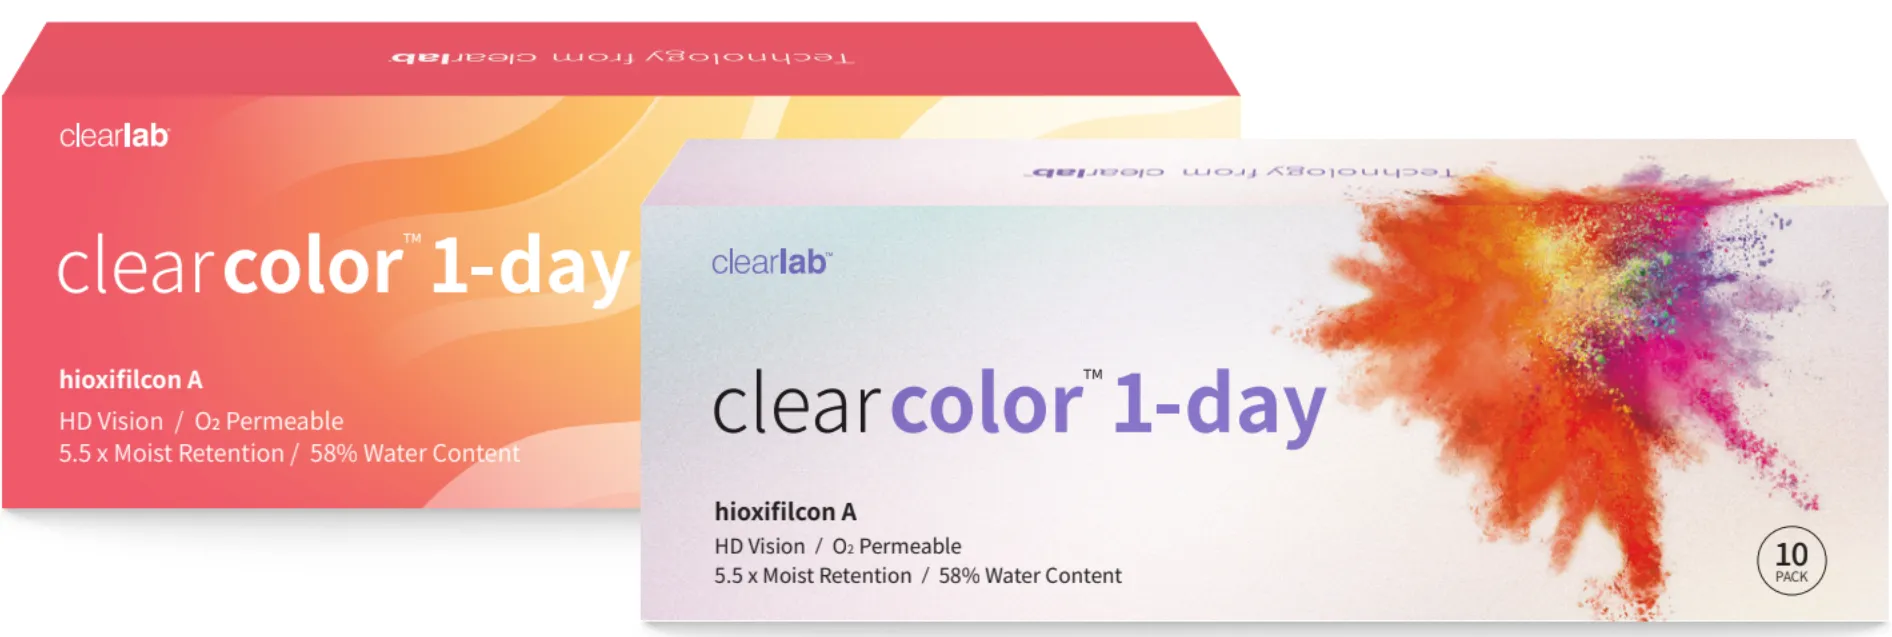 ClearLab ClearColor 1-Day kolorowe soczewki kontaktowe jasnoniebieskie, -1,00, 10 szt.